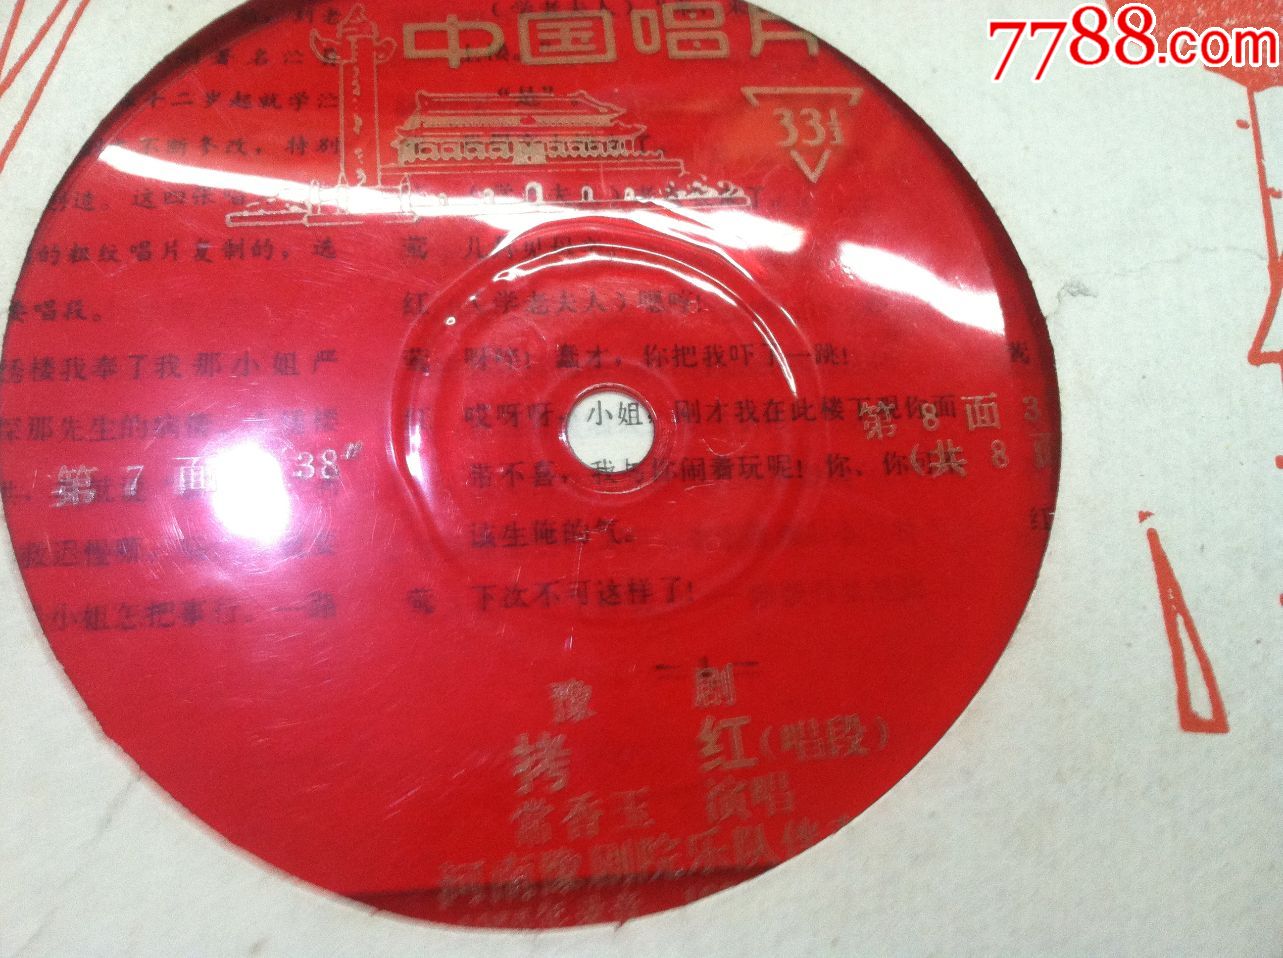 小薄膜唱片--常香玉经典豫剧曲目【拷红】唱段